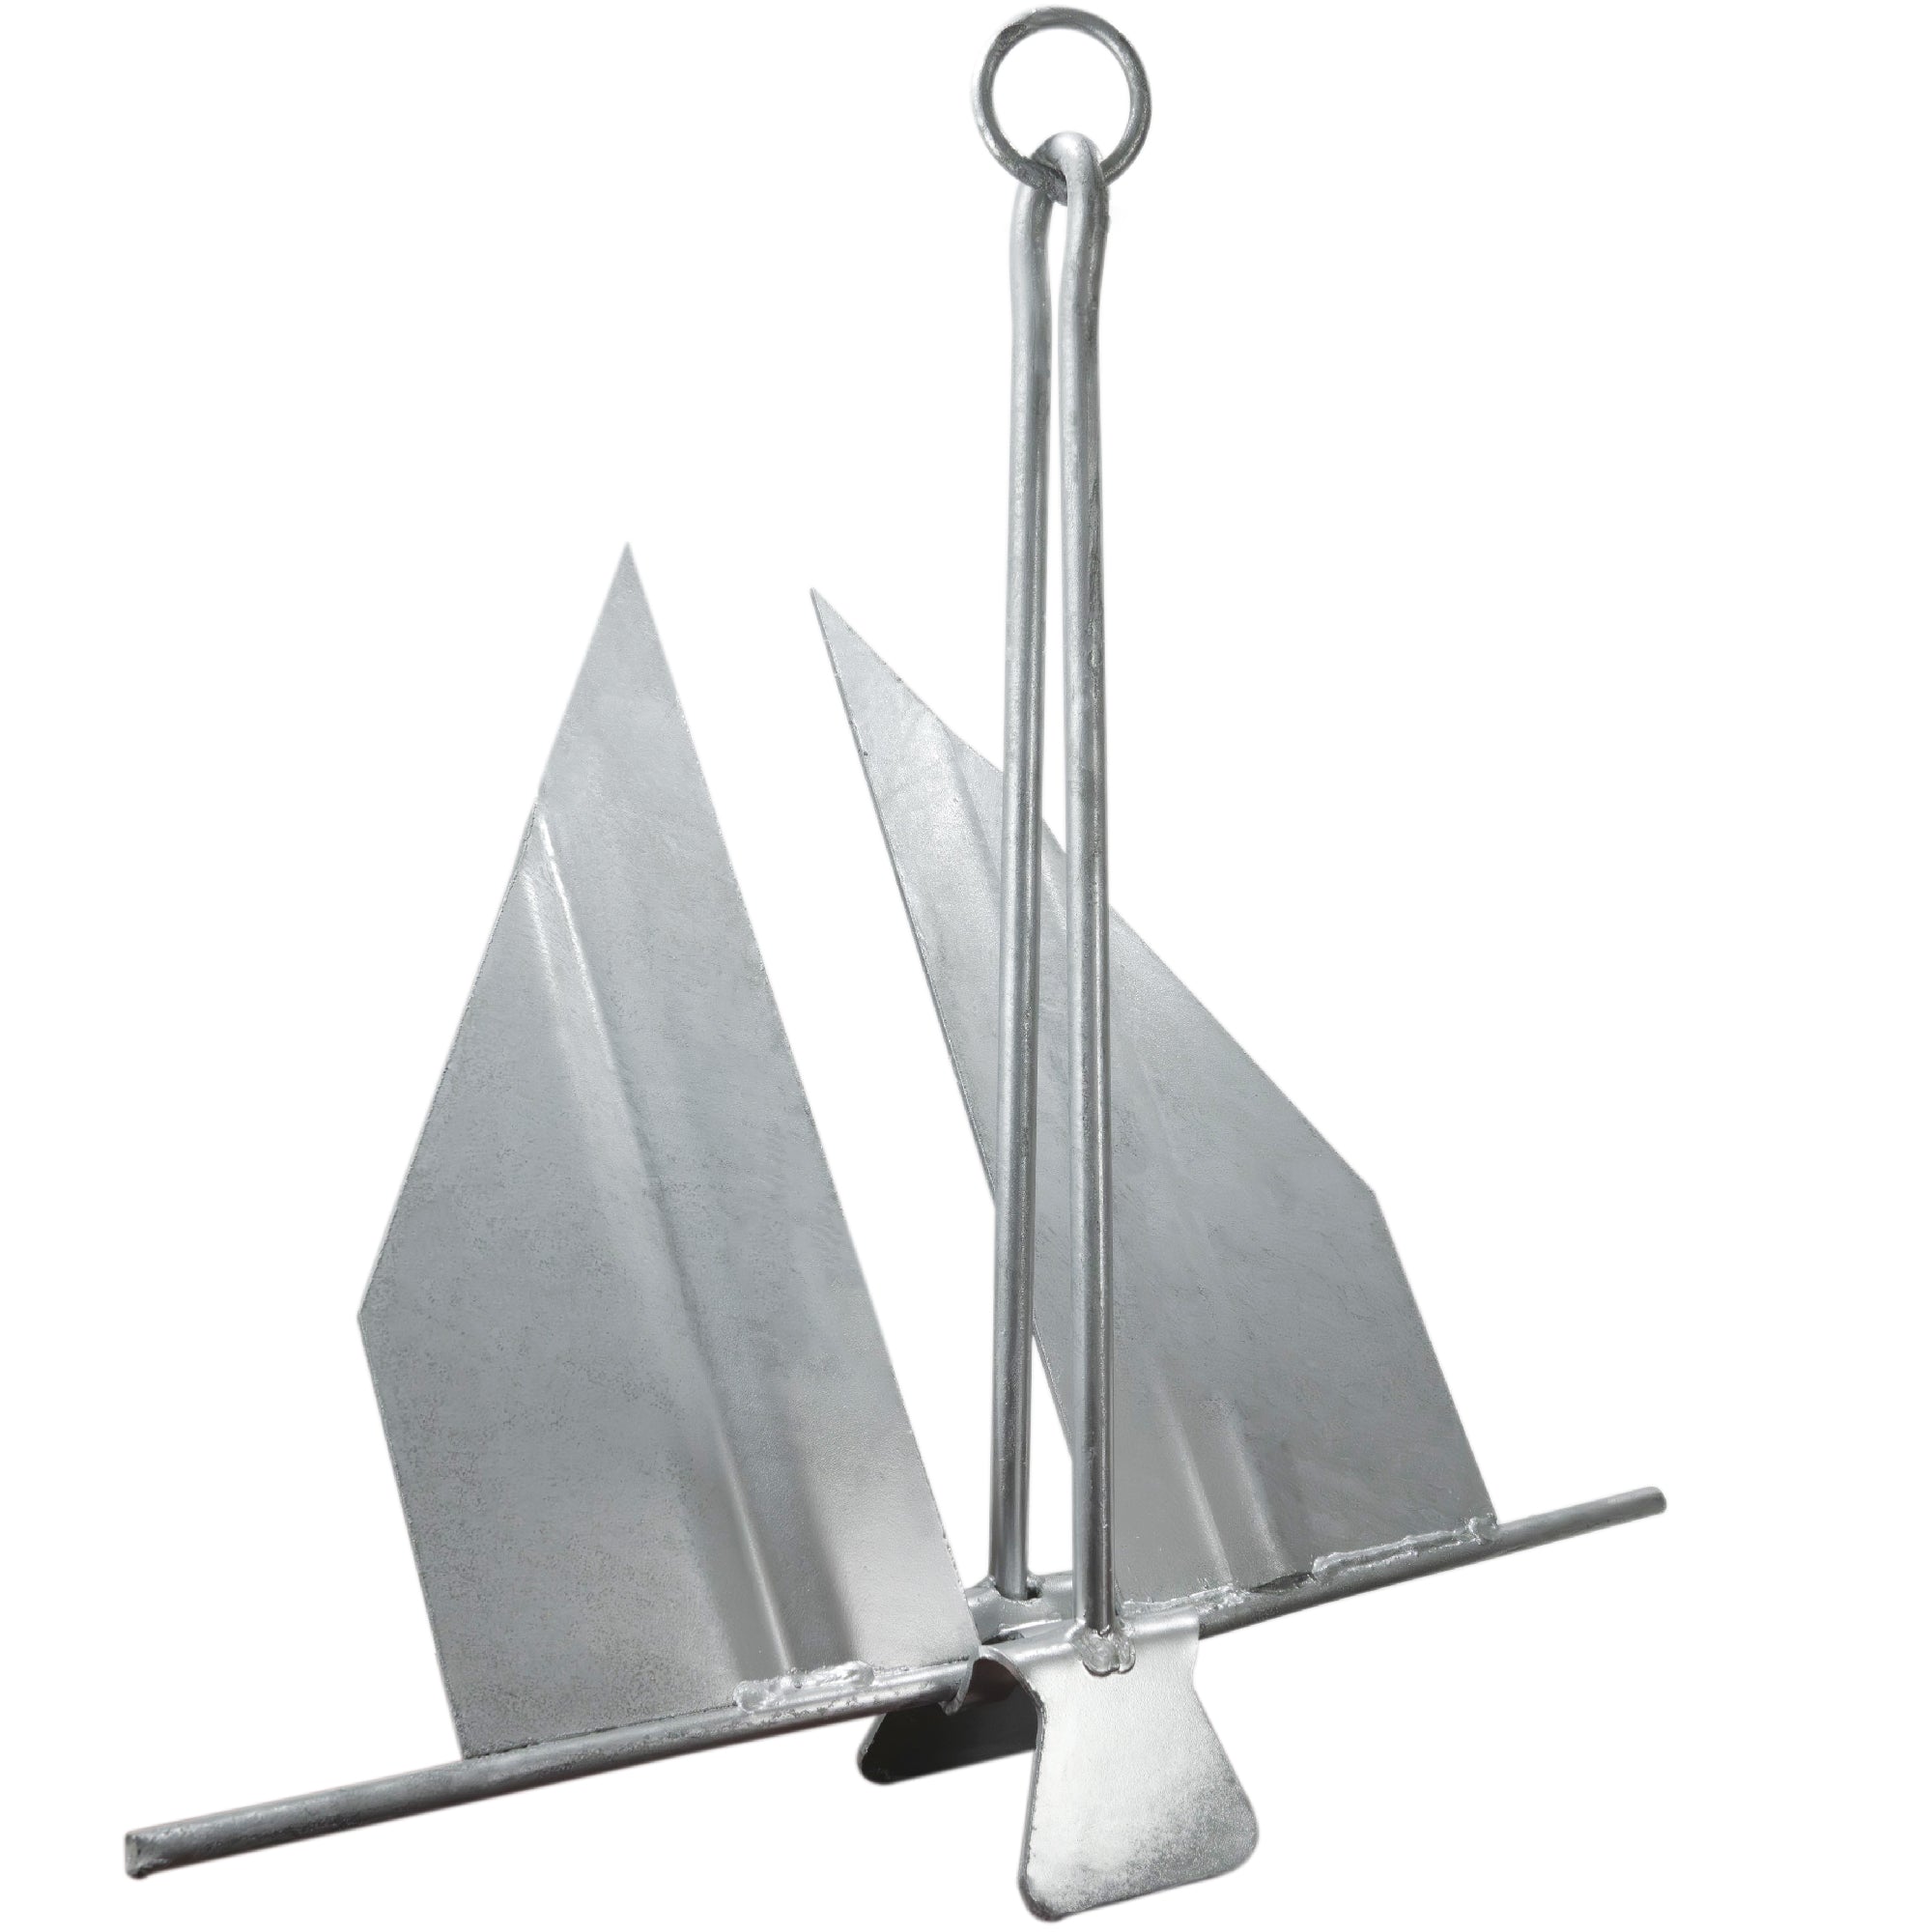 Boat Fluke Anchor, 5 Lb Easy-Release Galvanized Steel, Slip Ring Shank - FO4555